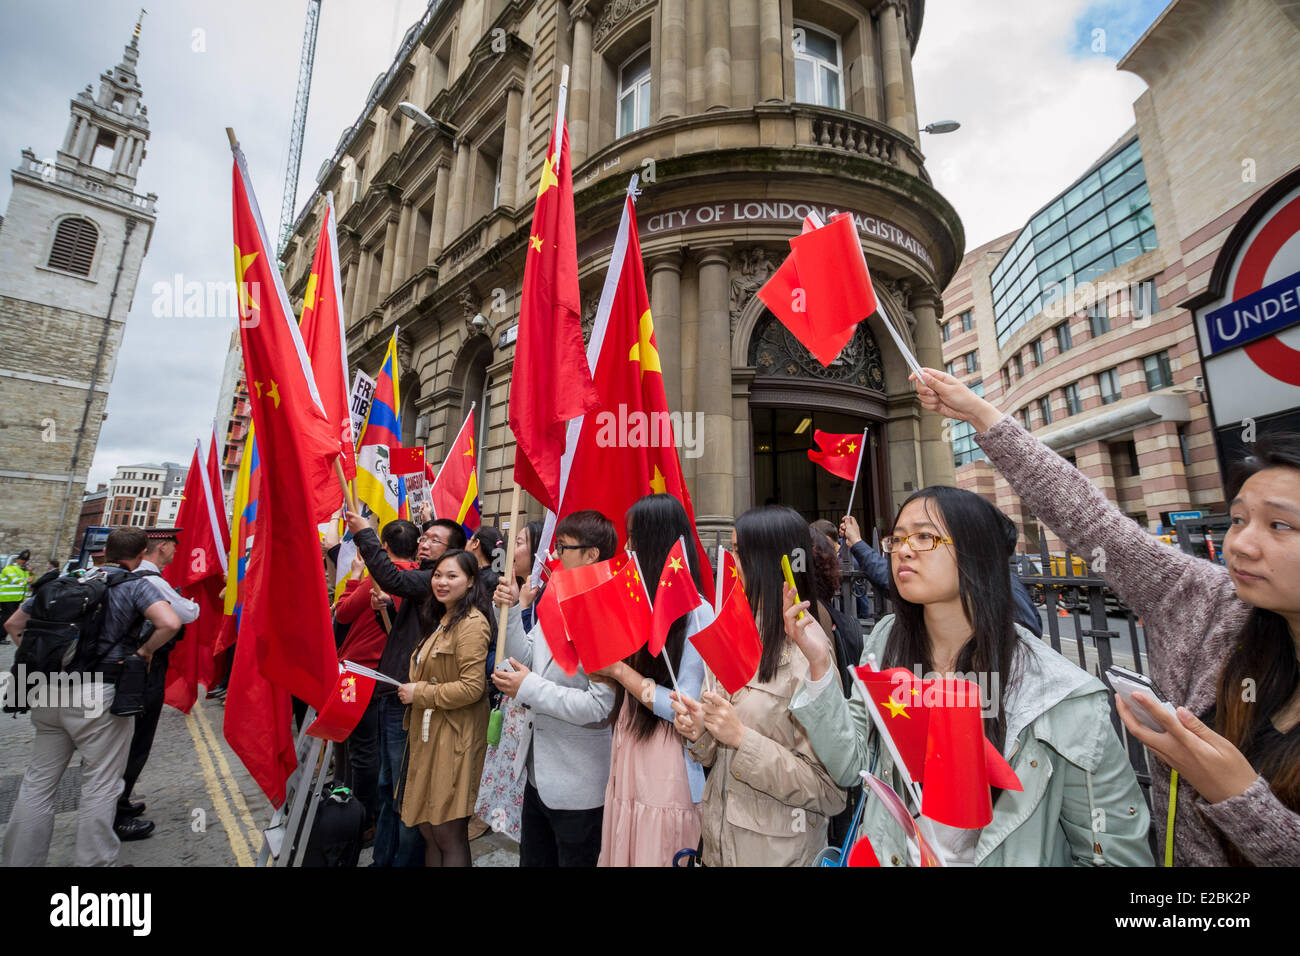 London, UK. 18. Juni 2014. Free Tibet-Demonstranten Zusammenstoß mit Anhänger der pro chinesische Regierung in London Credit: Guy Corbishley/Alamy Live News Stockfoto